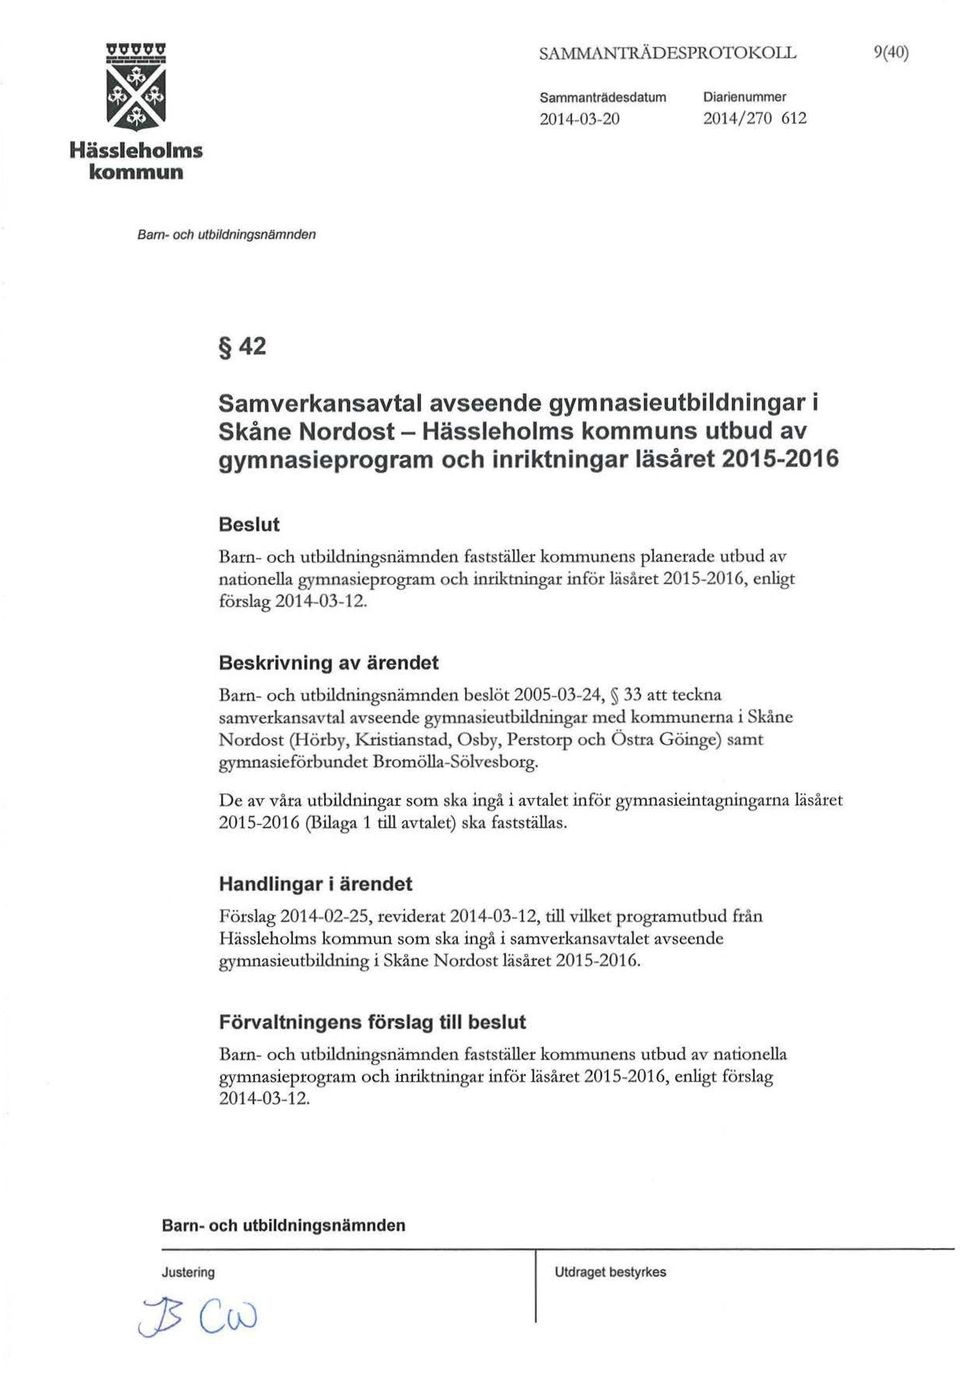 Beskrivning av ärendet beslöt 2005-03-24, 33 att teckna samverkansavtal avseende gymnasieutbildningar med erna i Skåne Nordost (Hörby, Kristianstad, Osby, Perstorp och Ö stra Göinge) samt